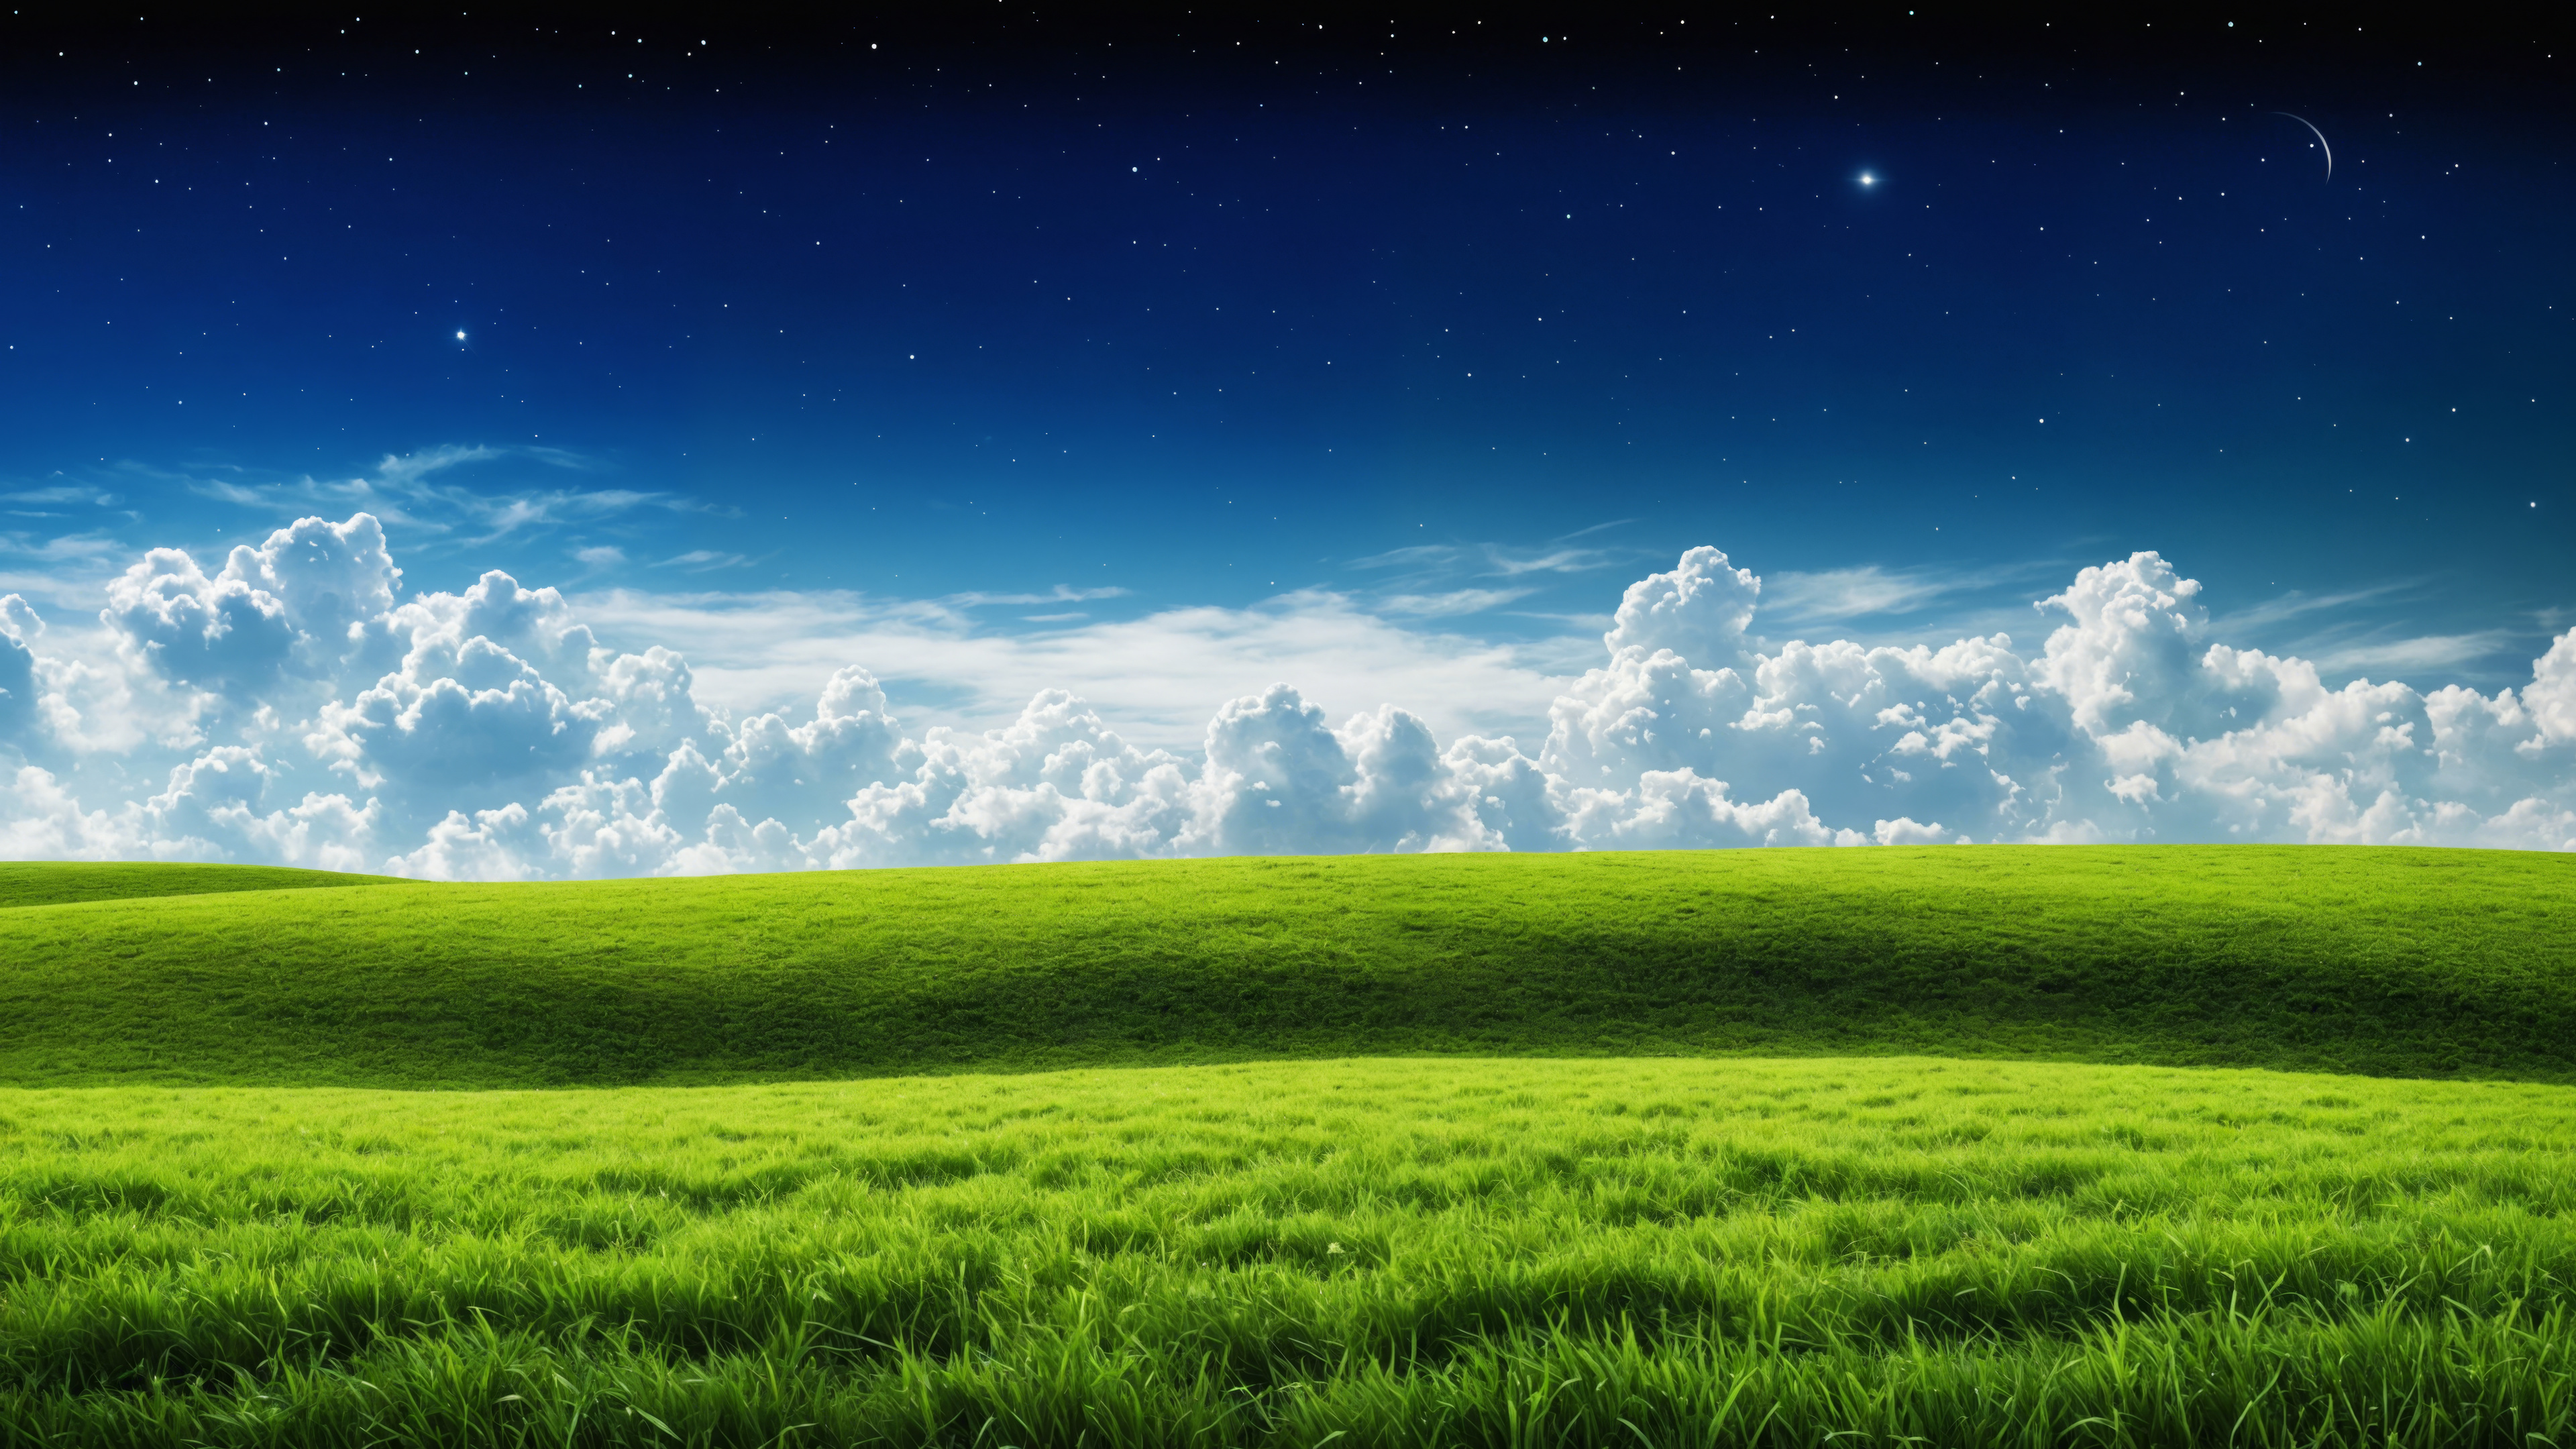 General 3840x2160 AI art field grass landscape clouds blue stars sunlight green